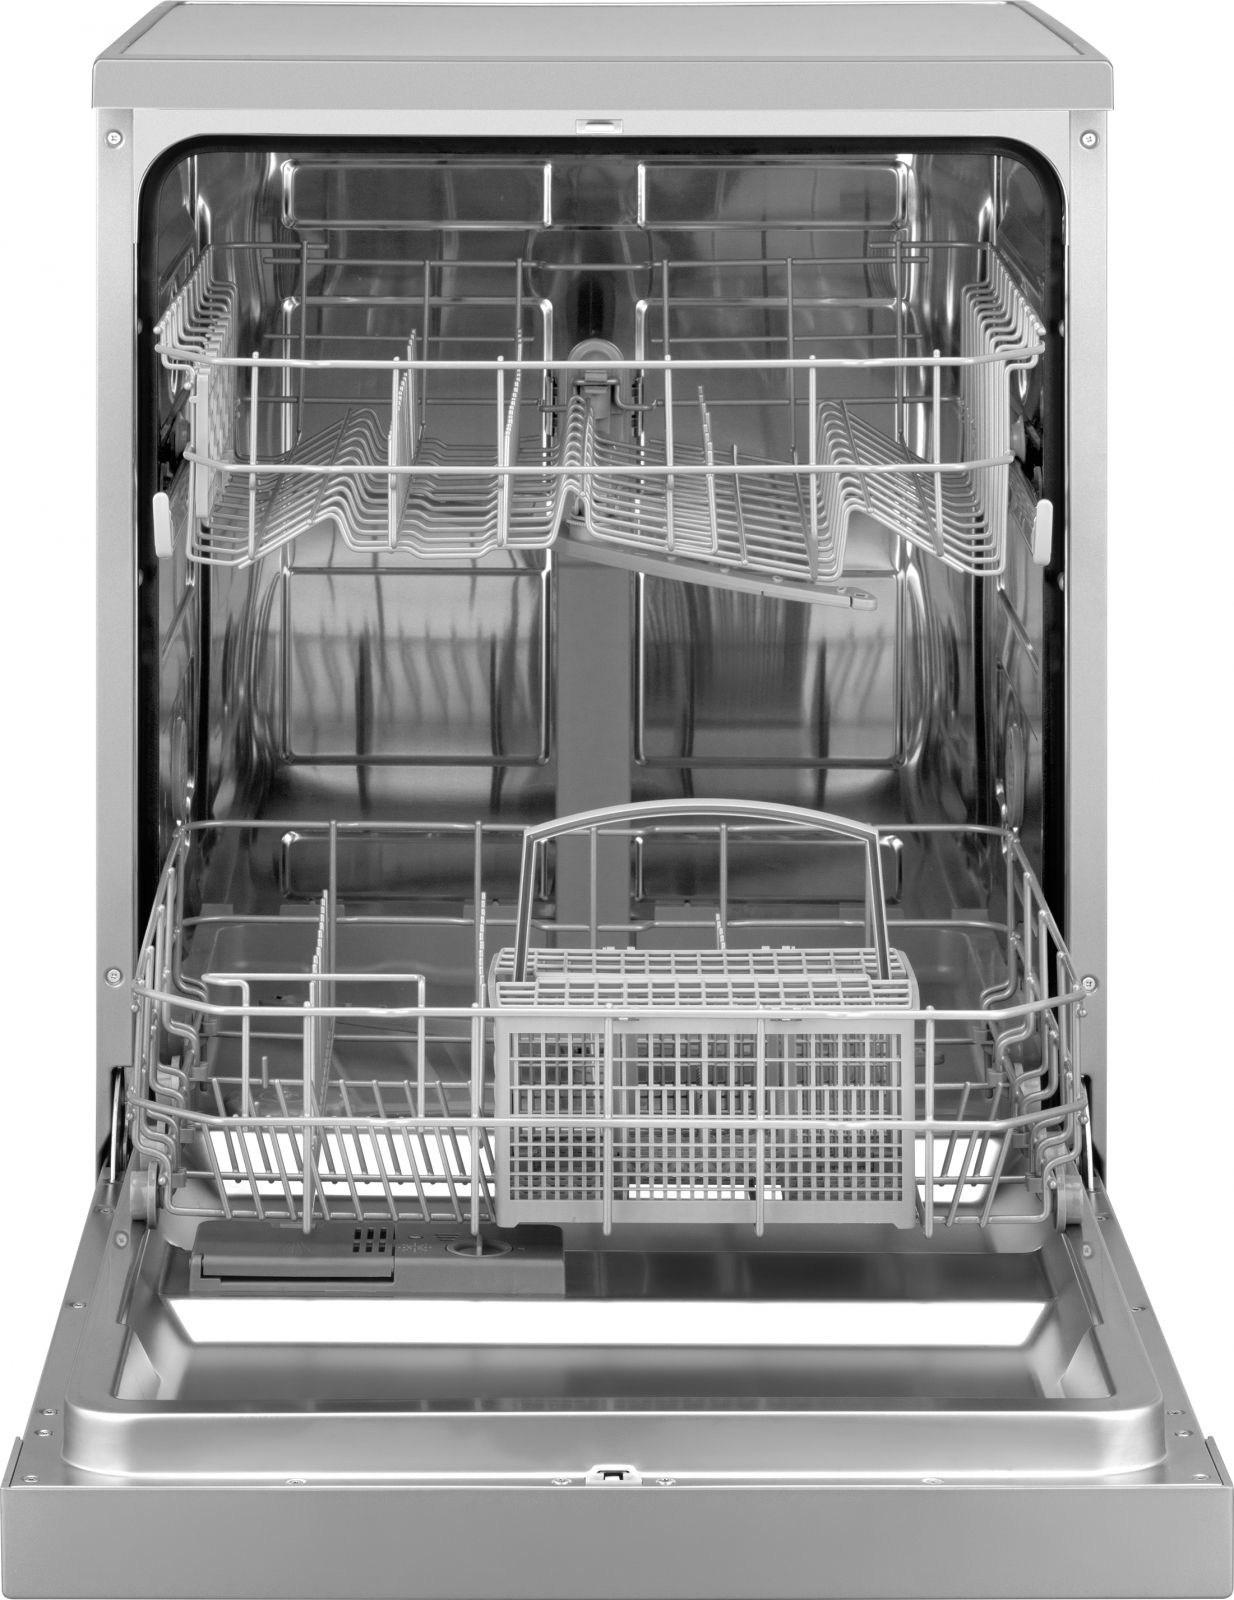 Посудомоечная машина Weissgauff DW 6026 D Silver серебристый (полноразмерная)